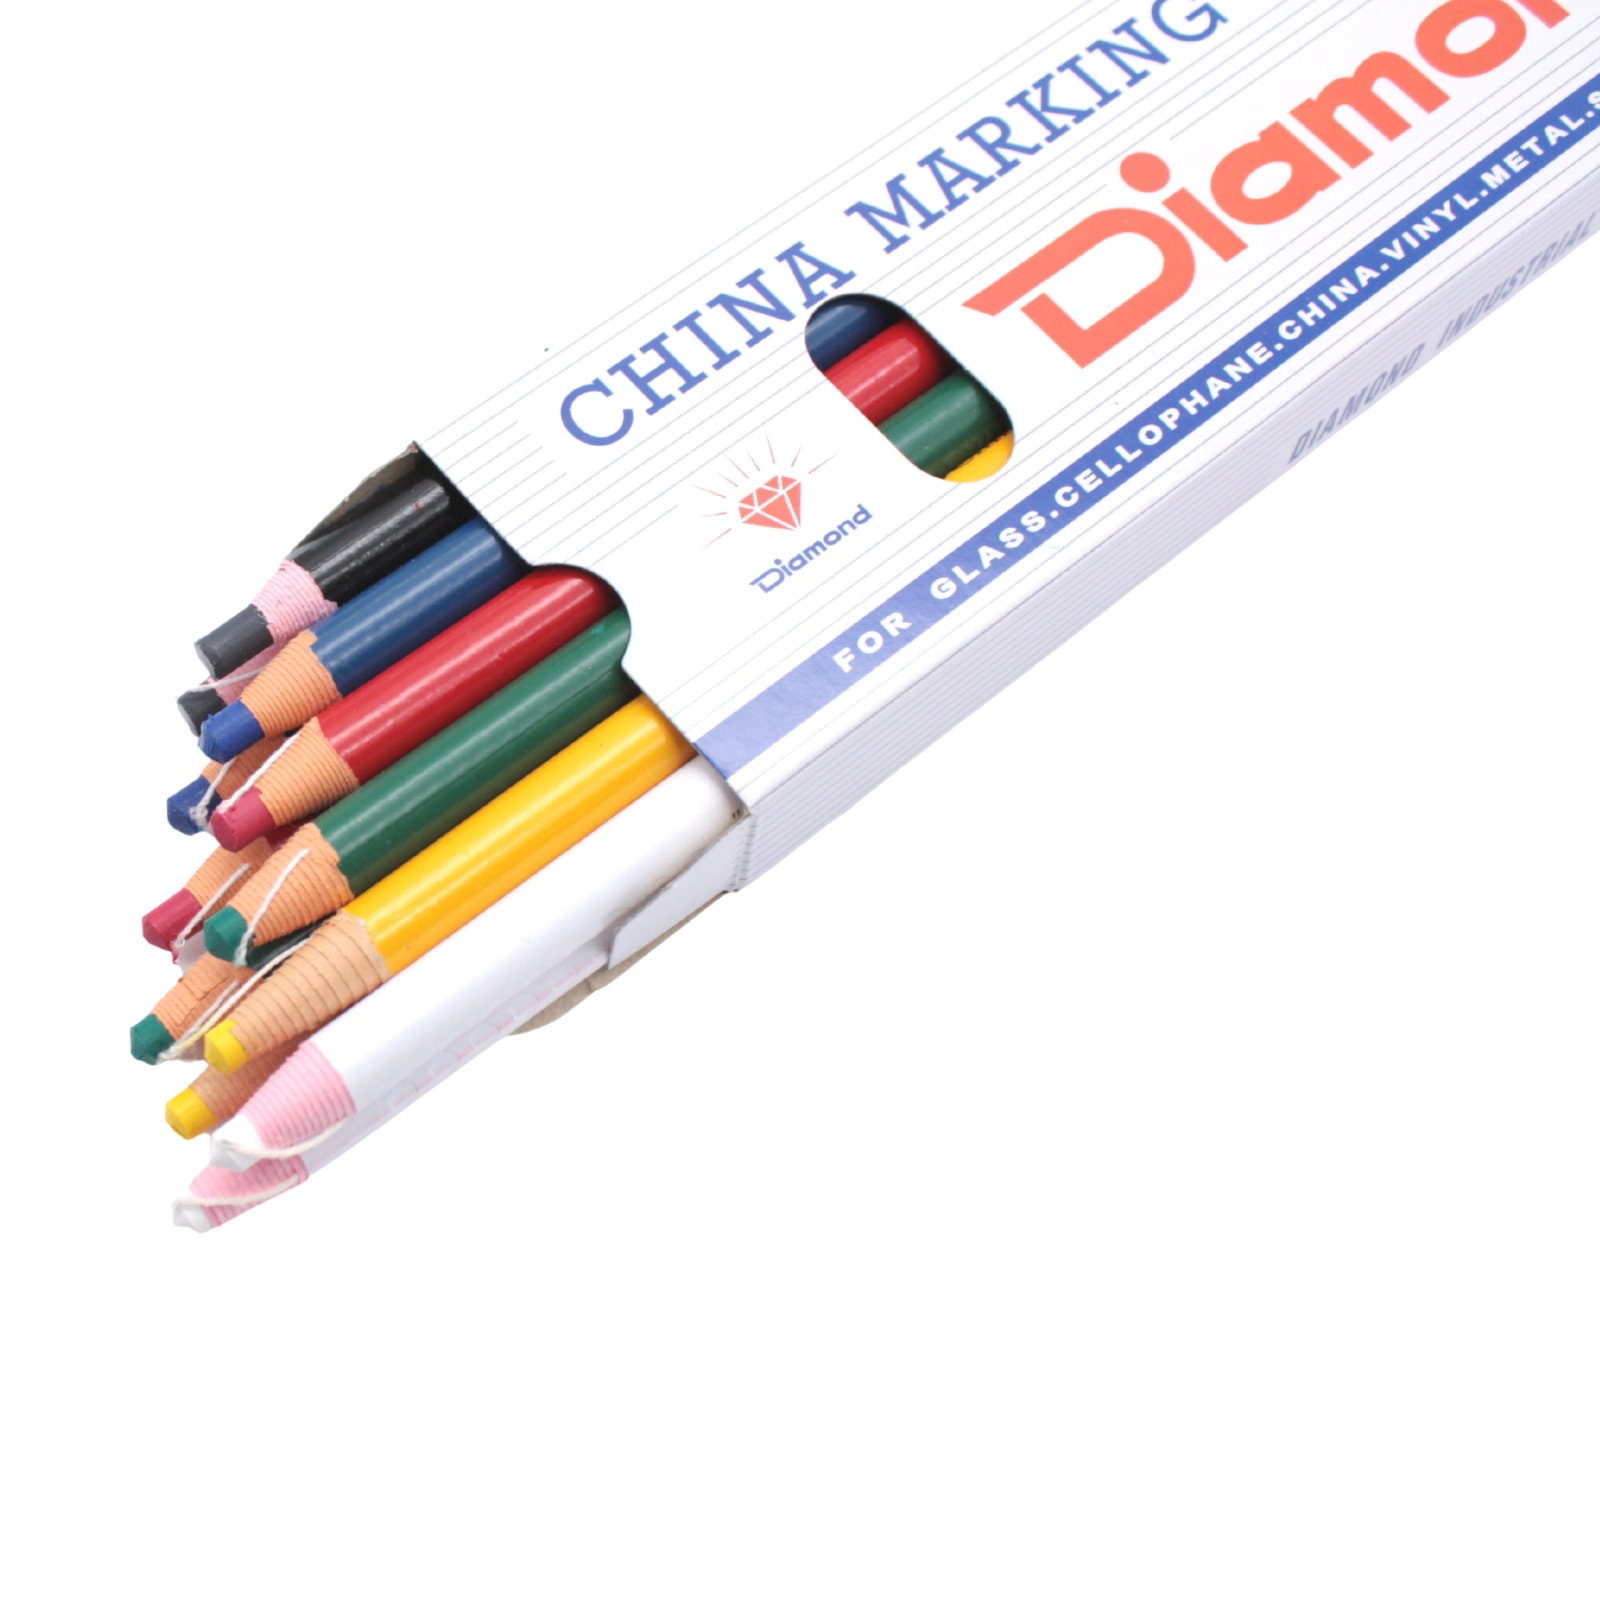 Berol China Marker (Grease Pencil) - Black BR-173T-1 B&H Photo